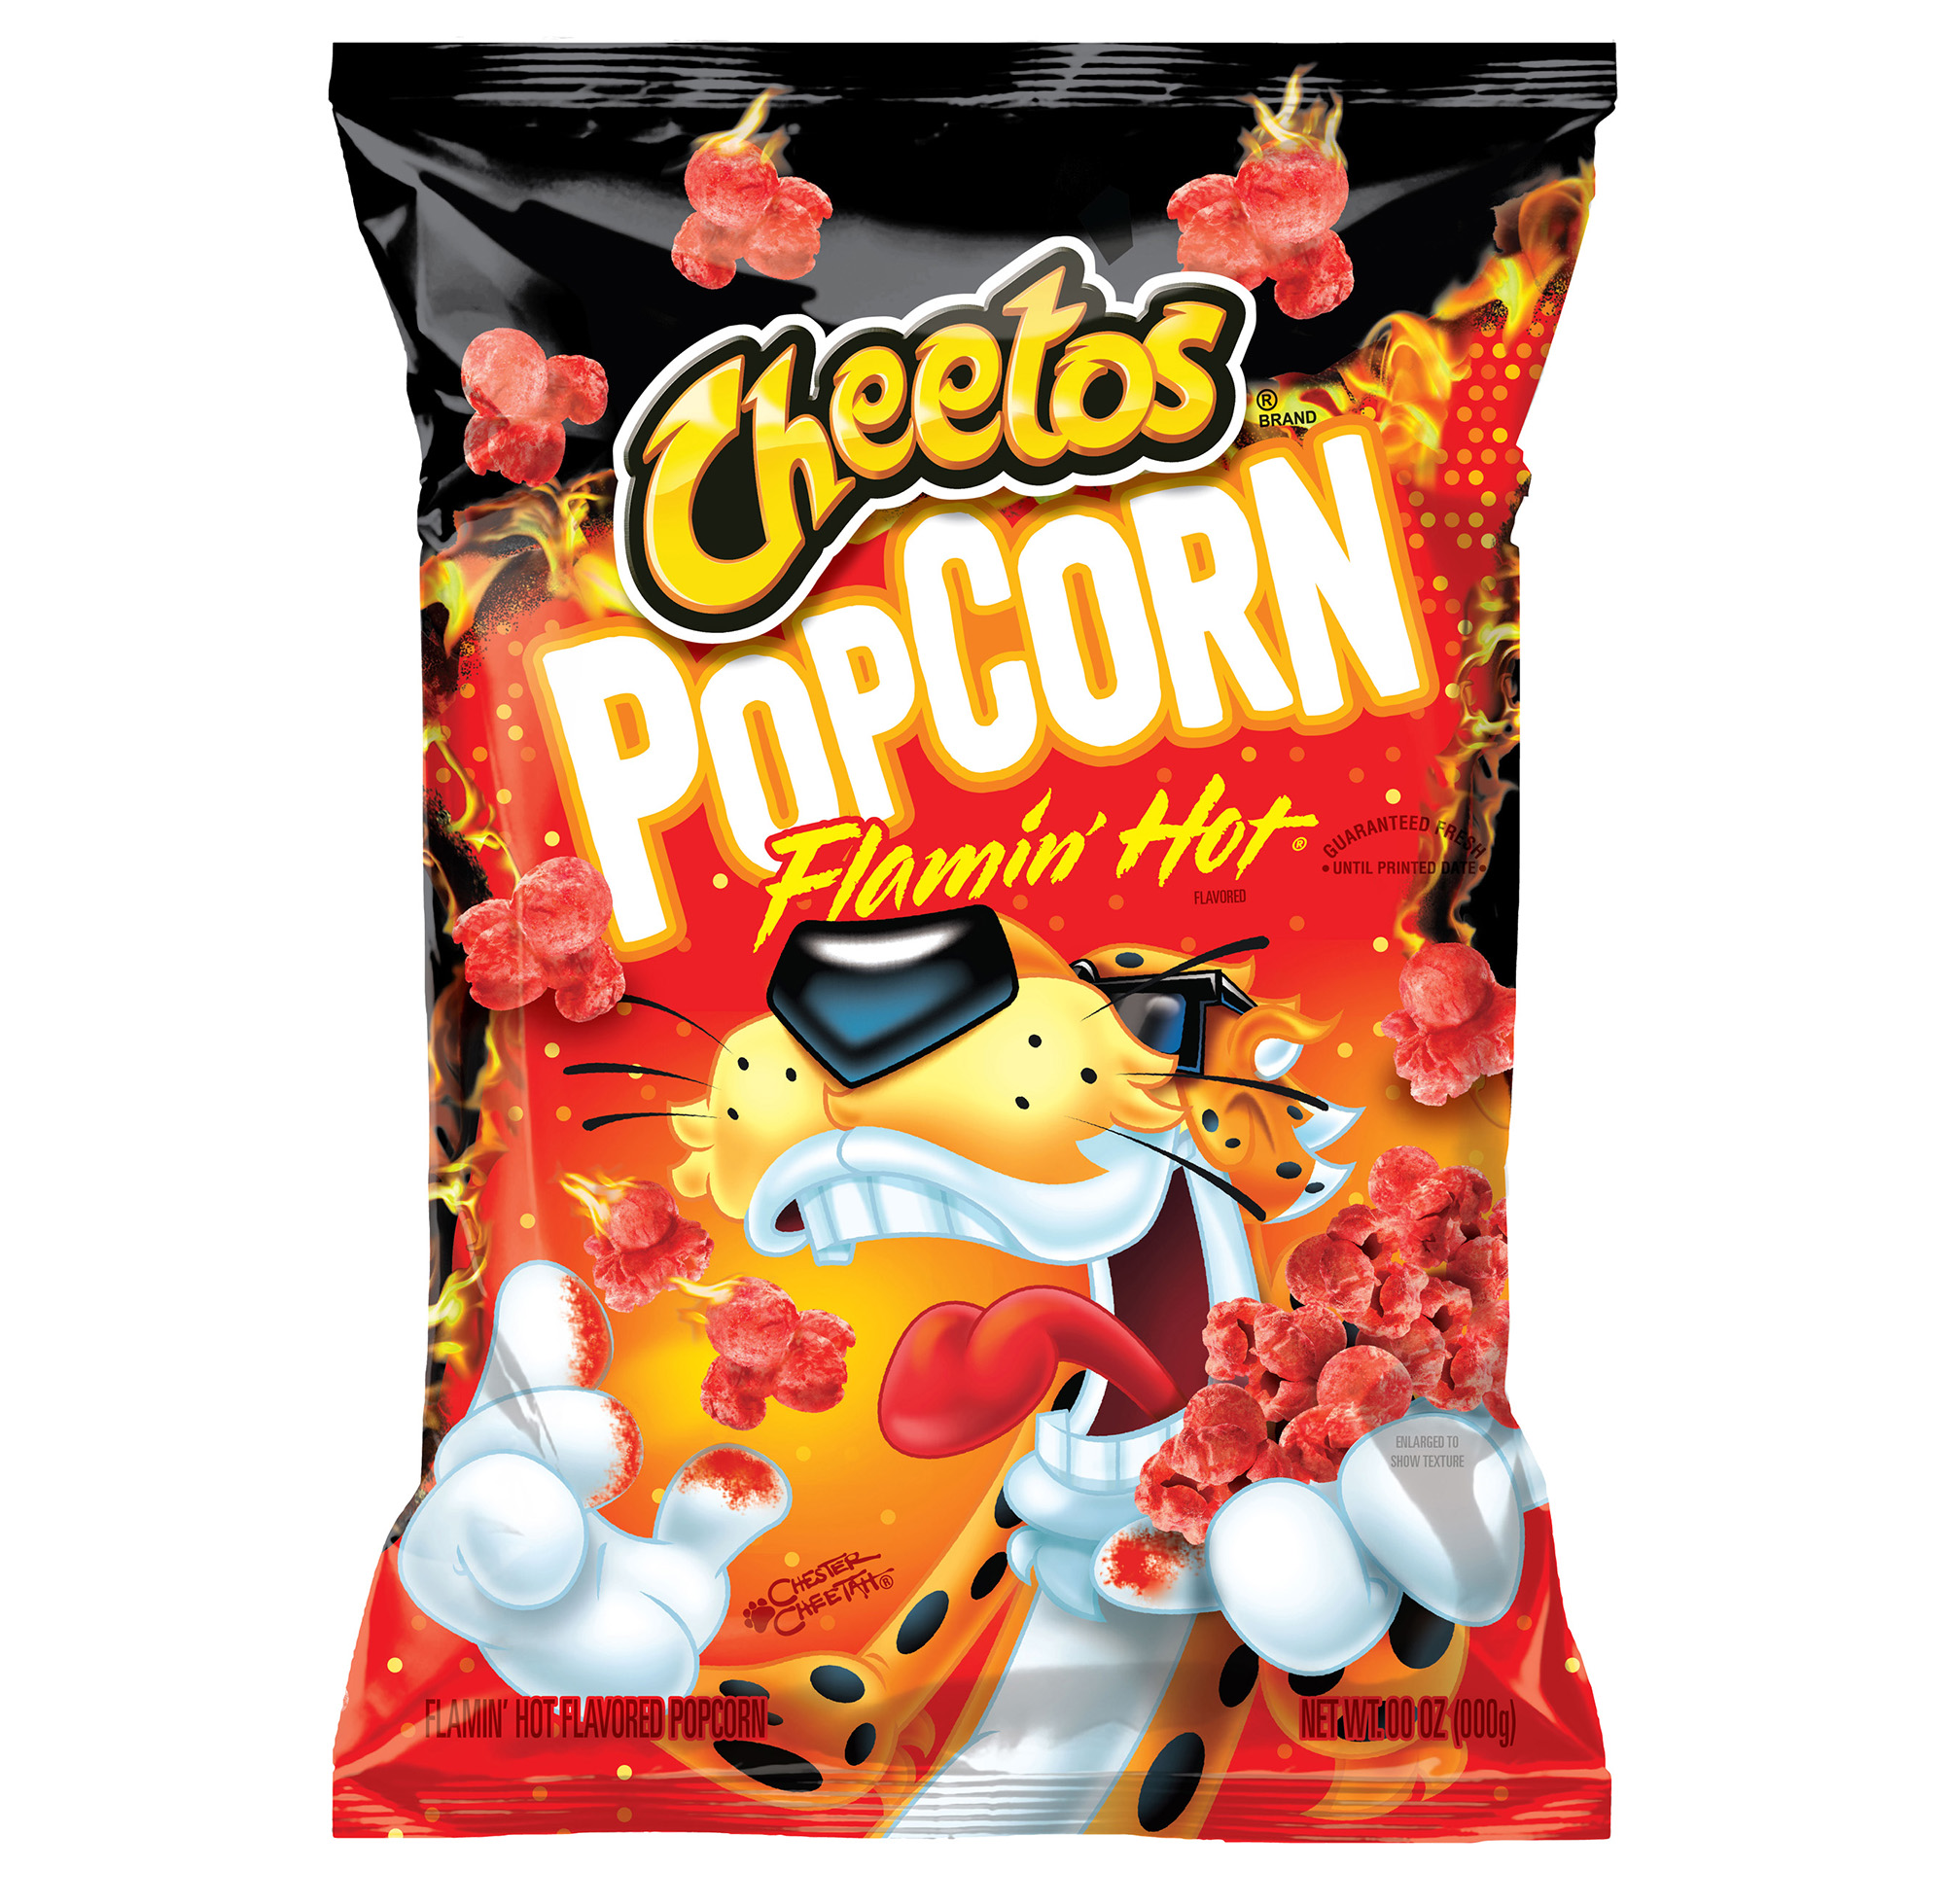 Cheetos Popcorn Flamin' Hot.